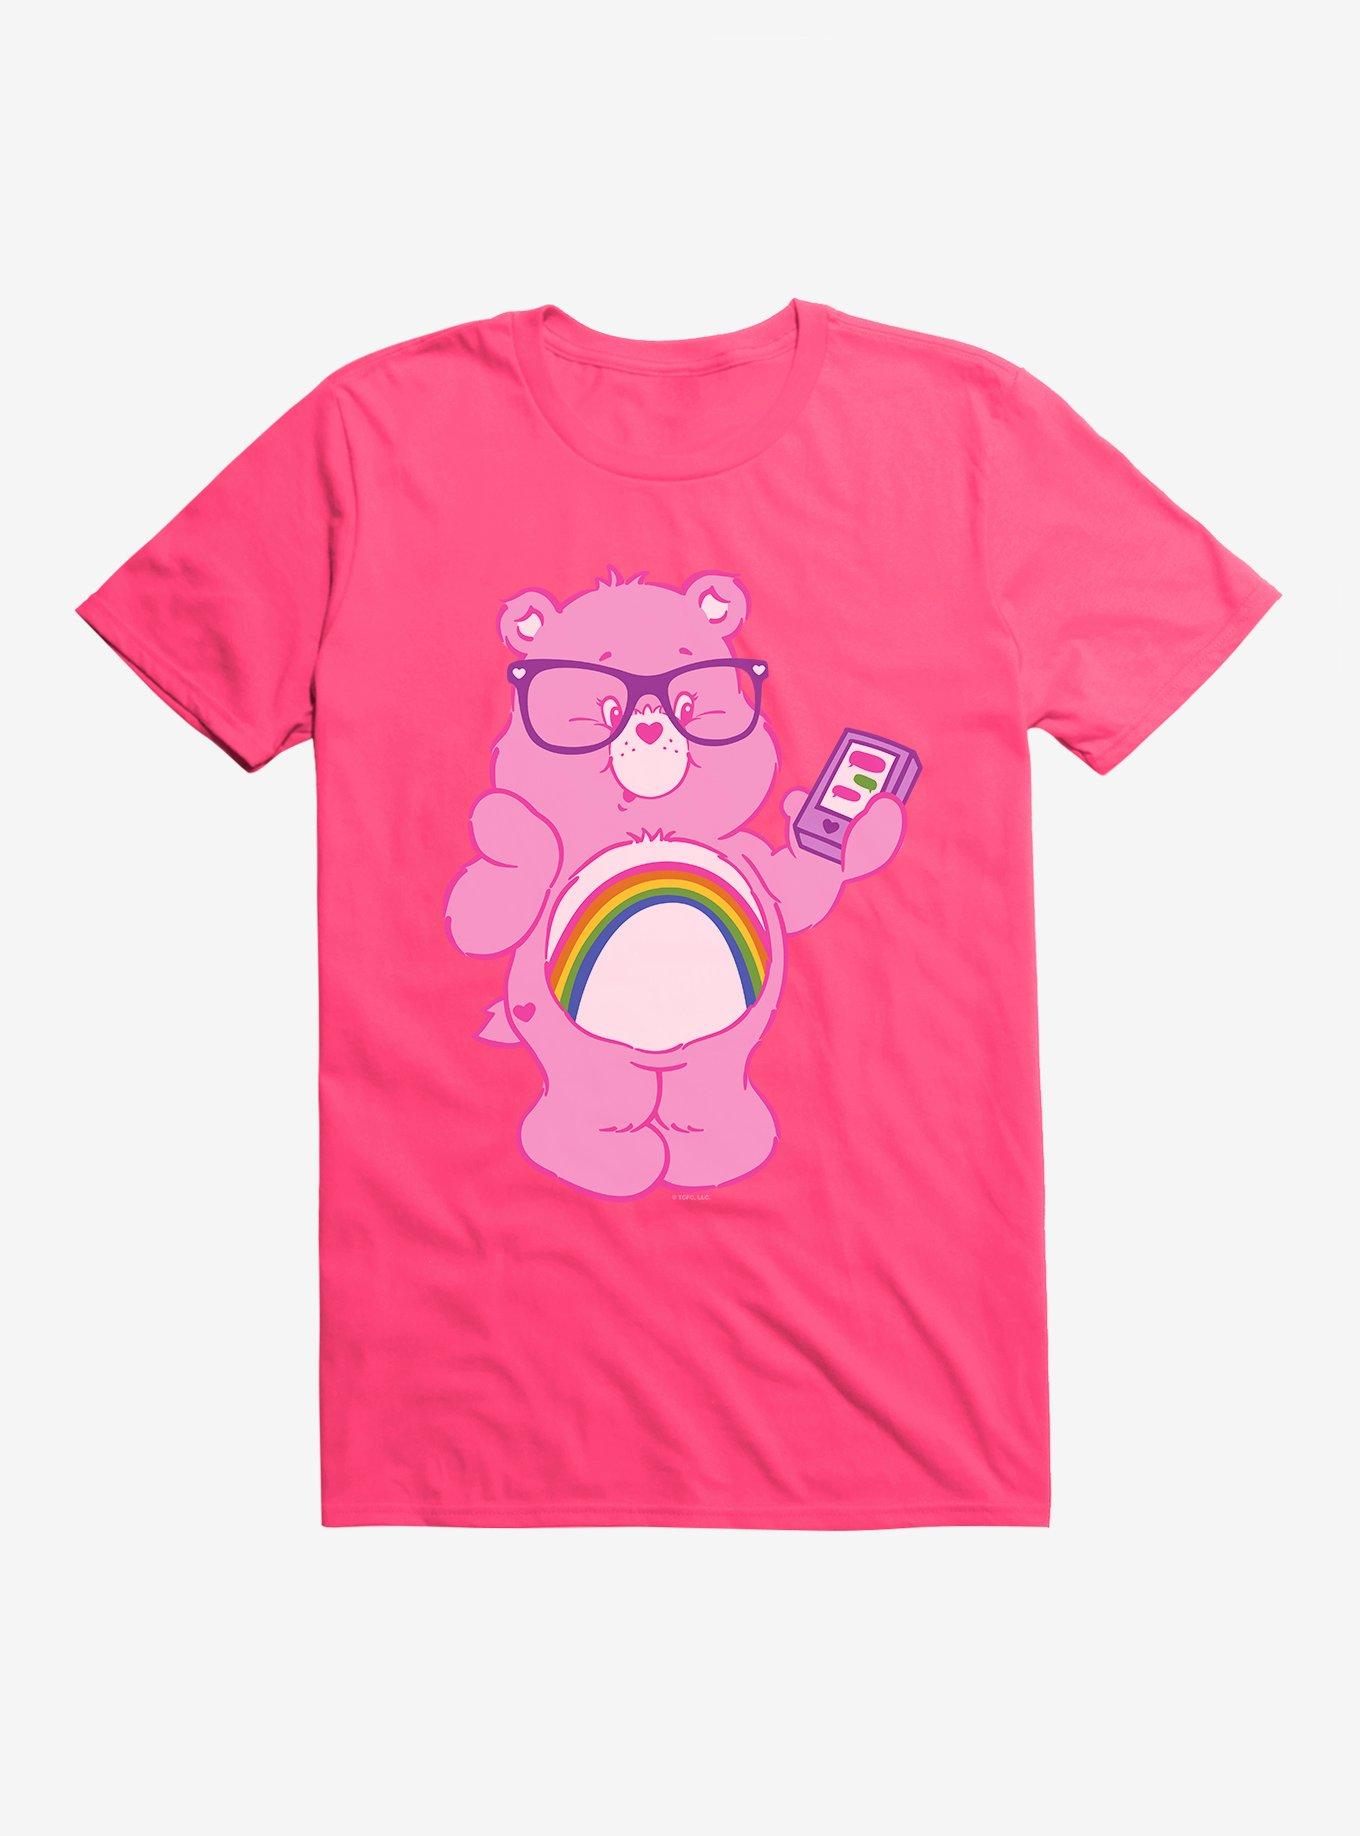 Care Bears Cheer Bear Texting T-Shirt, HOT PINK, hi-res